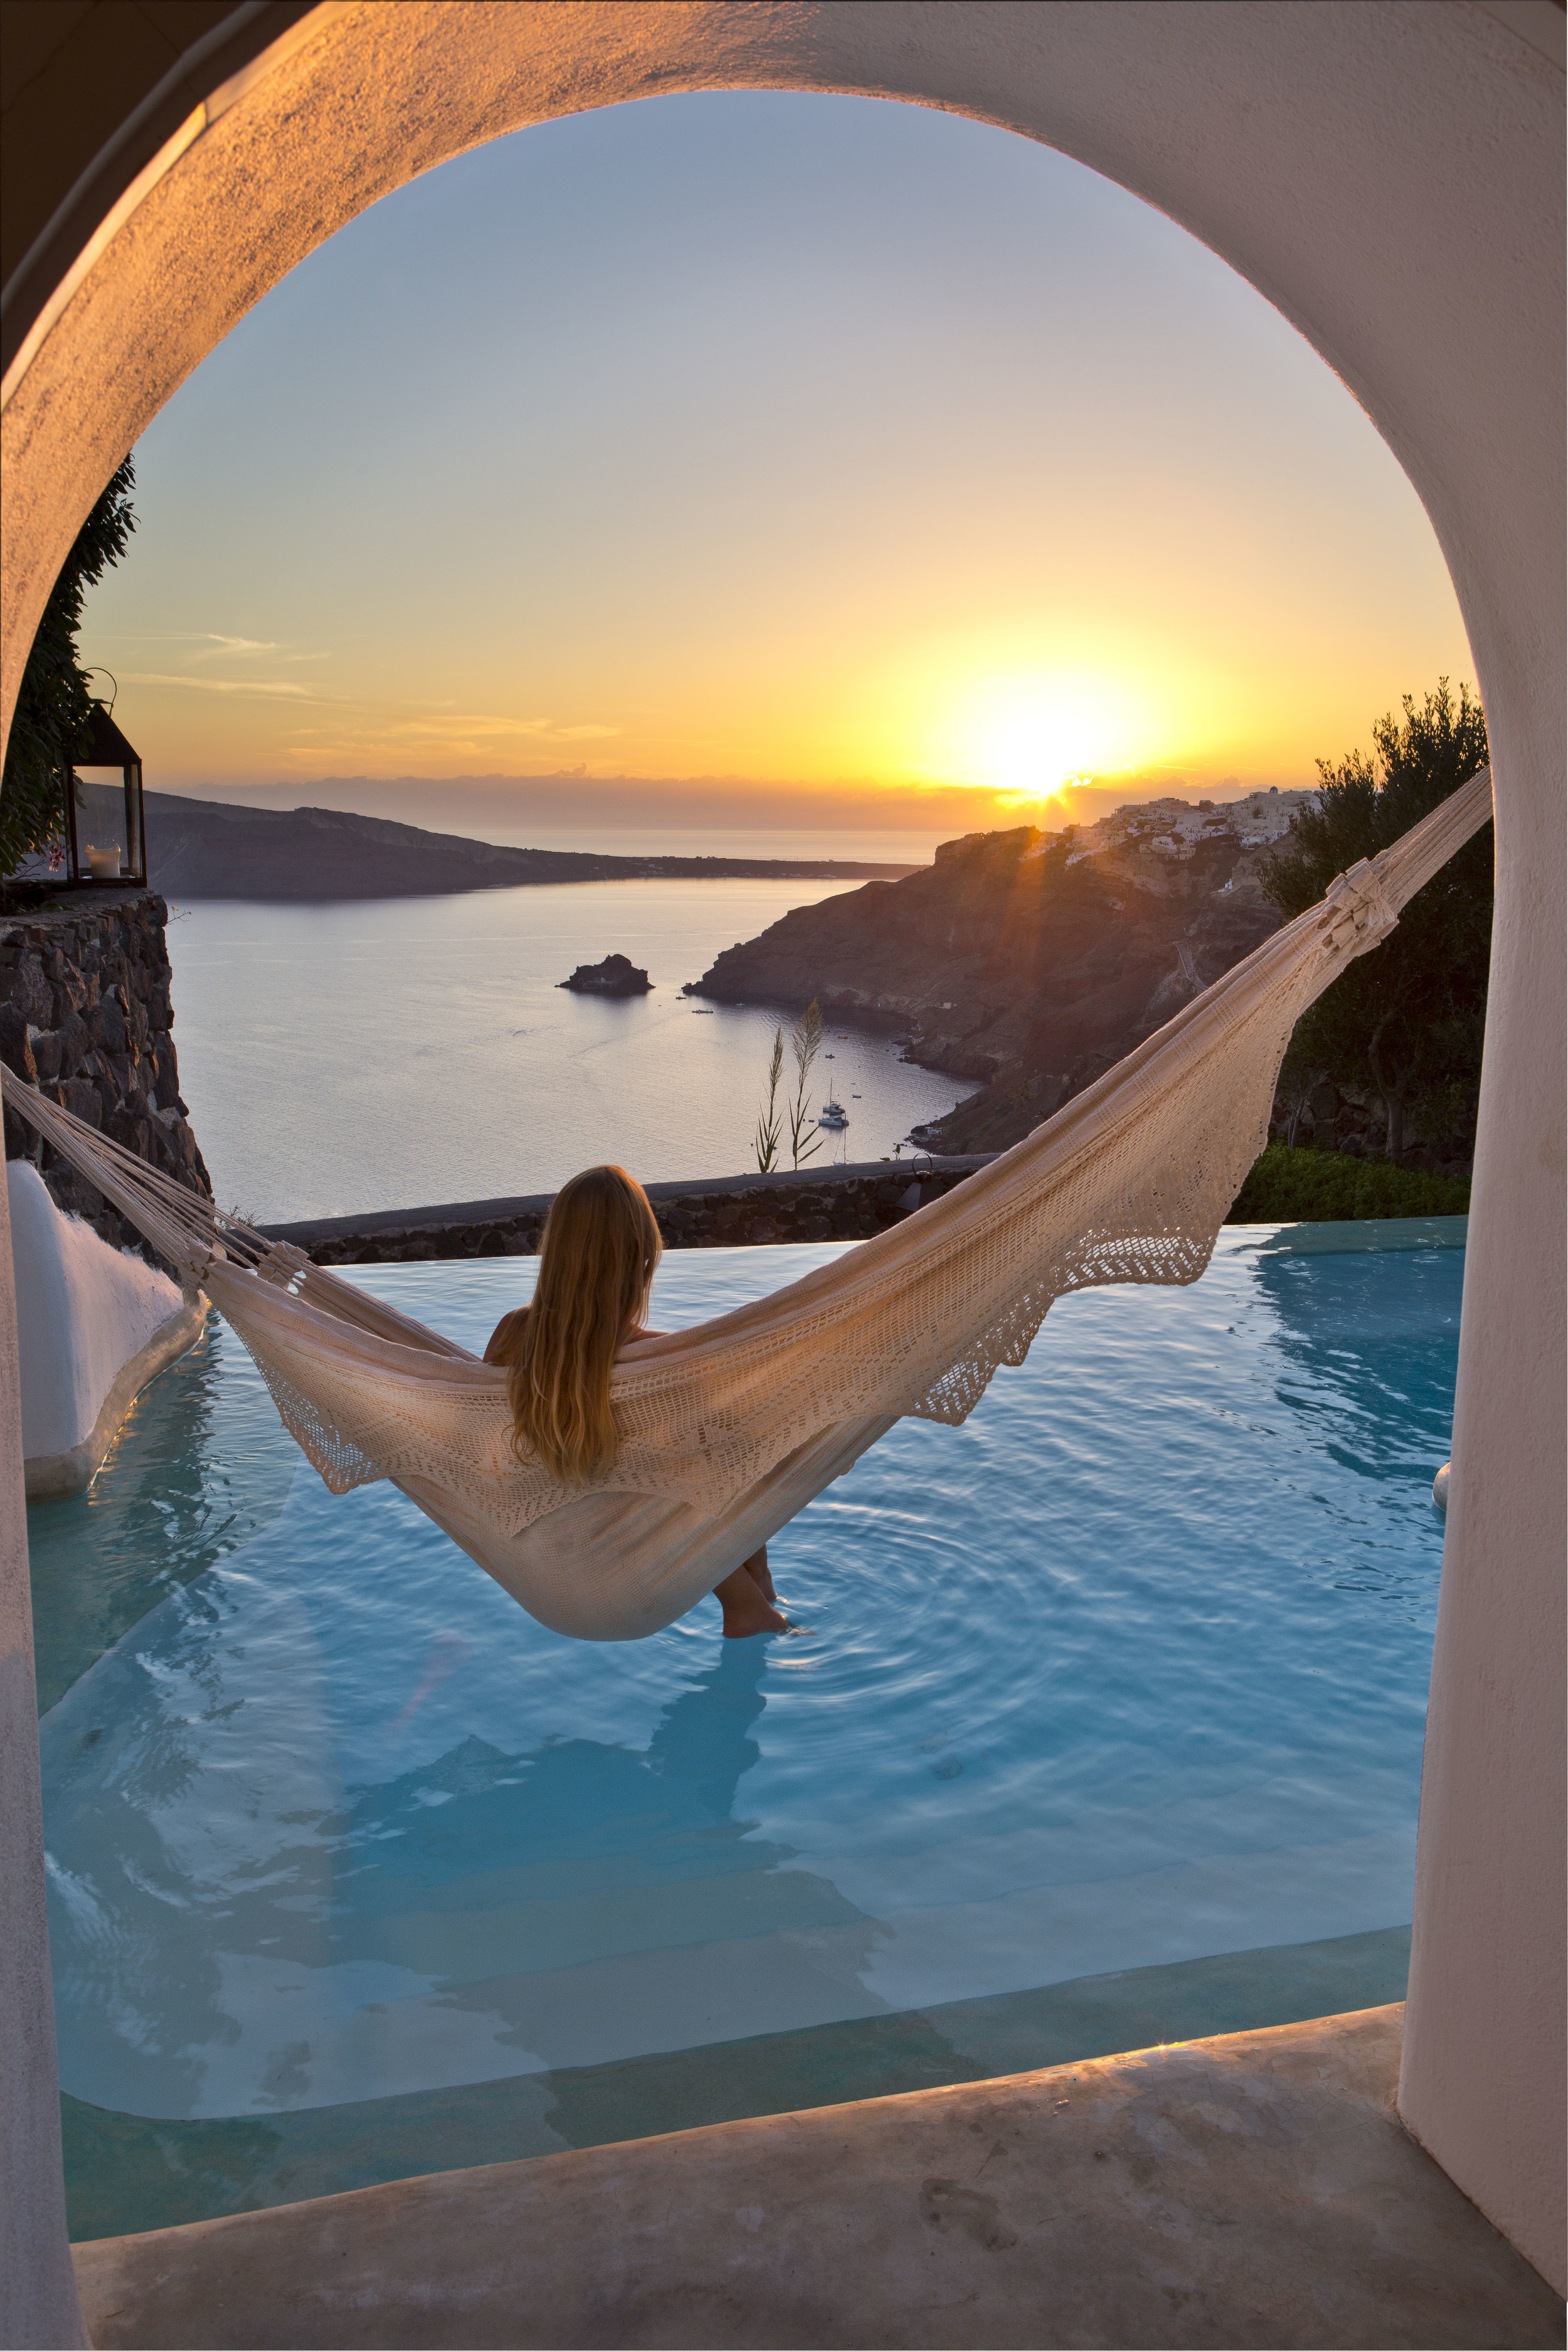 Santorini Hotels | Perivolas Hotel